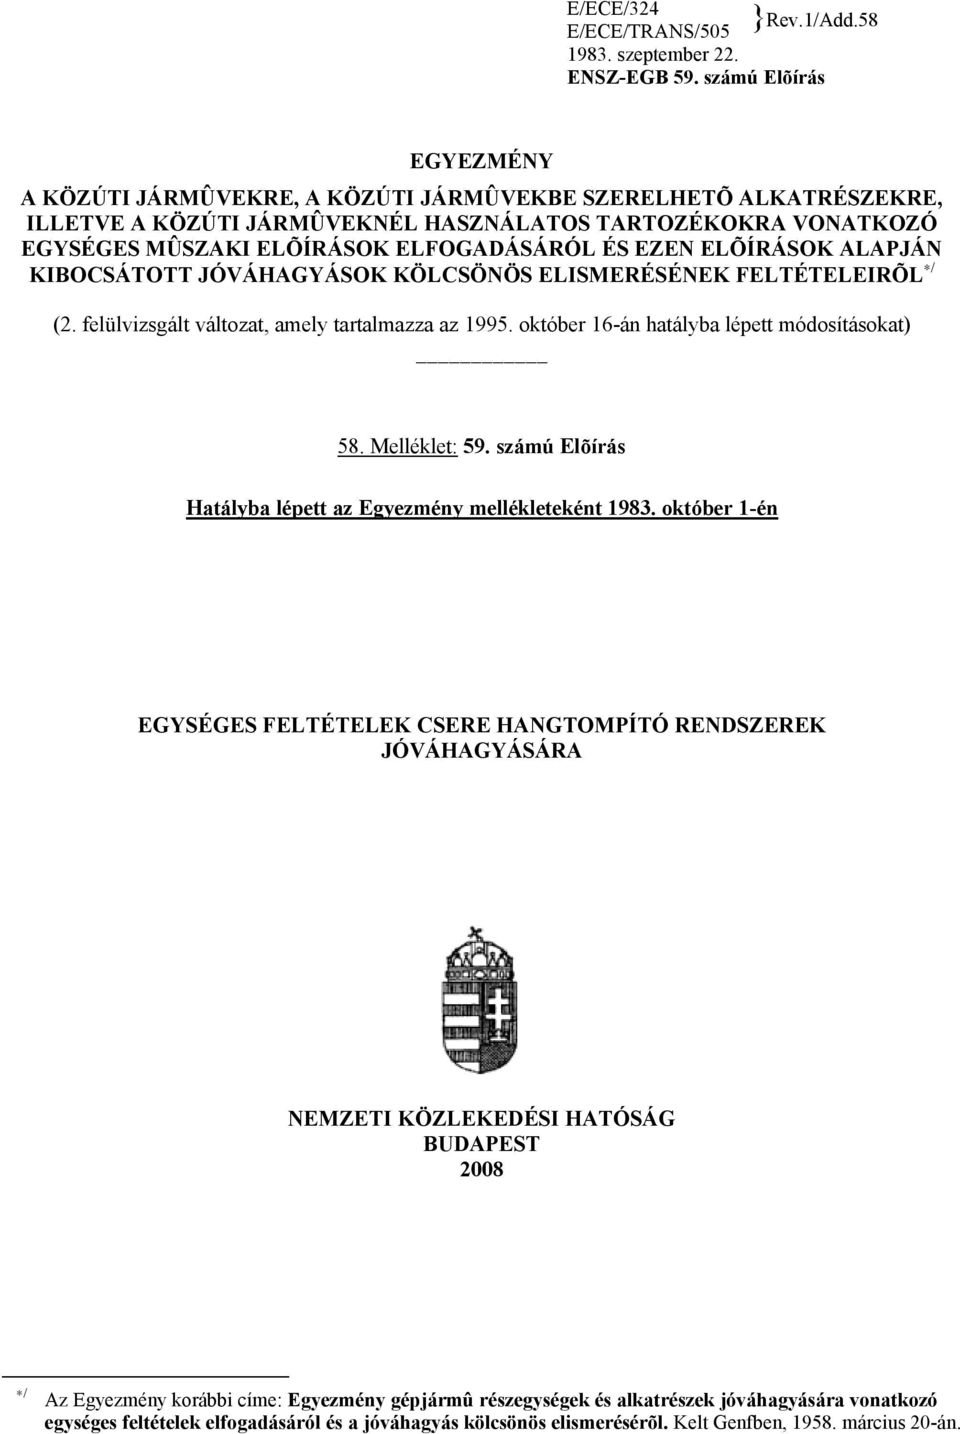 EZEN ELÕÍRÁSOK ALAPJÁN KIBOCSÁTOTT JÓVÁHAGYÁSOK KÖLCSÖNÖS ELISMERÉSÉNEK FELTÉTELEIRÕL / (2. felülvizsgált változat, amely tartalmazza az 1995. október 16-án hatályba lépett módosításokat) 58.